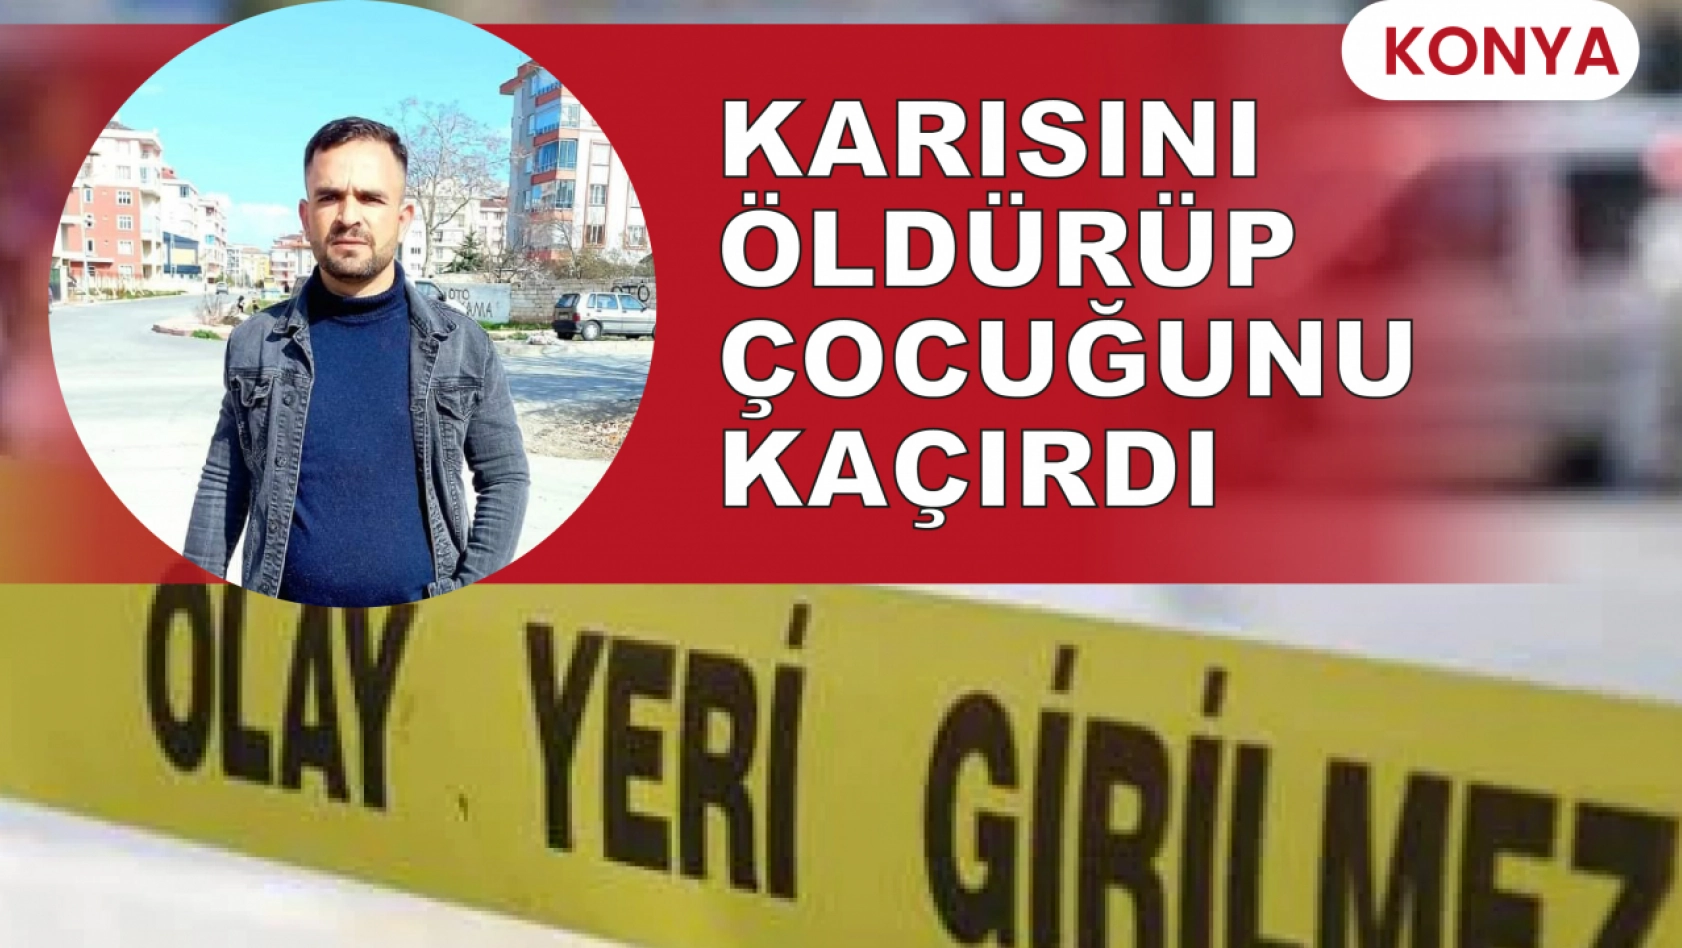 Konya'da eşini vuran şüpheli kısa sürede yakalandı